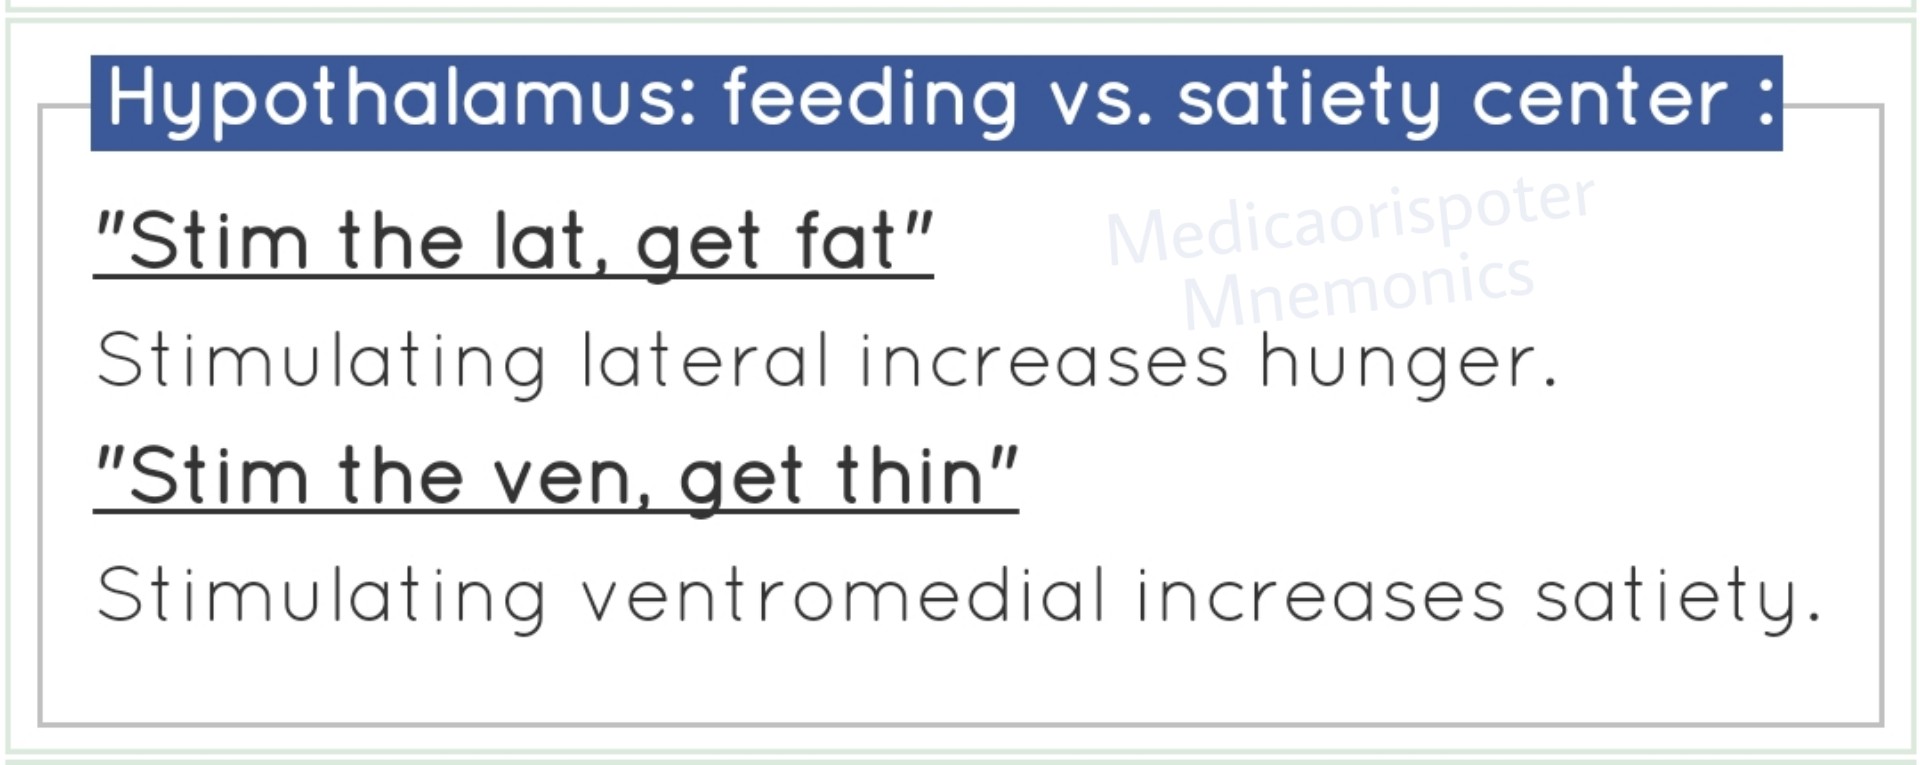 Hypothalamus Feeding vs Satiety Center